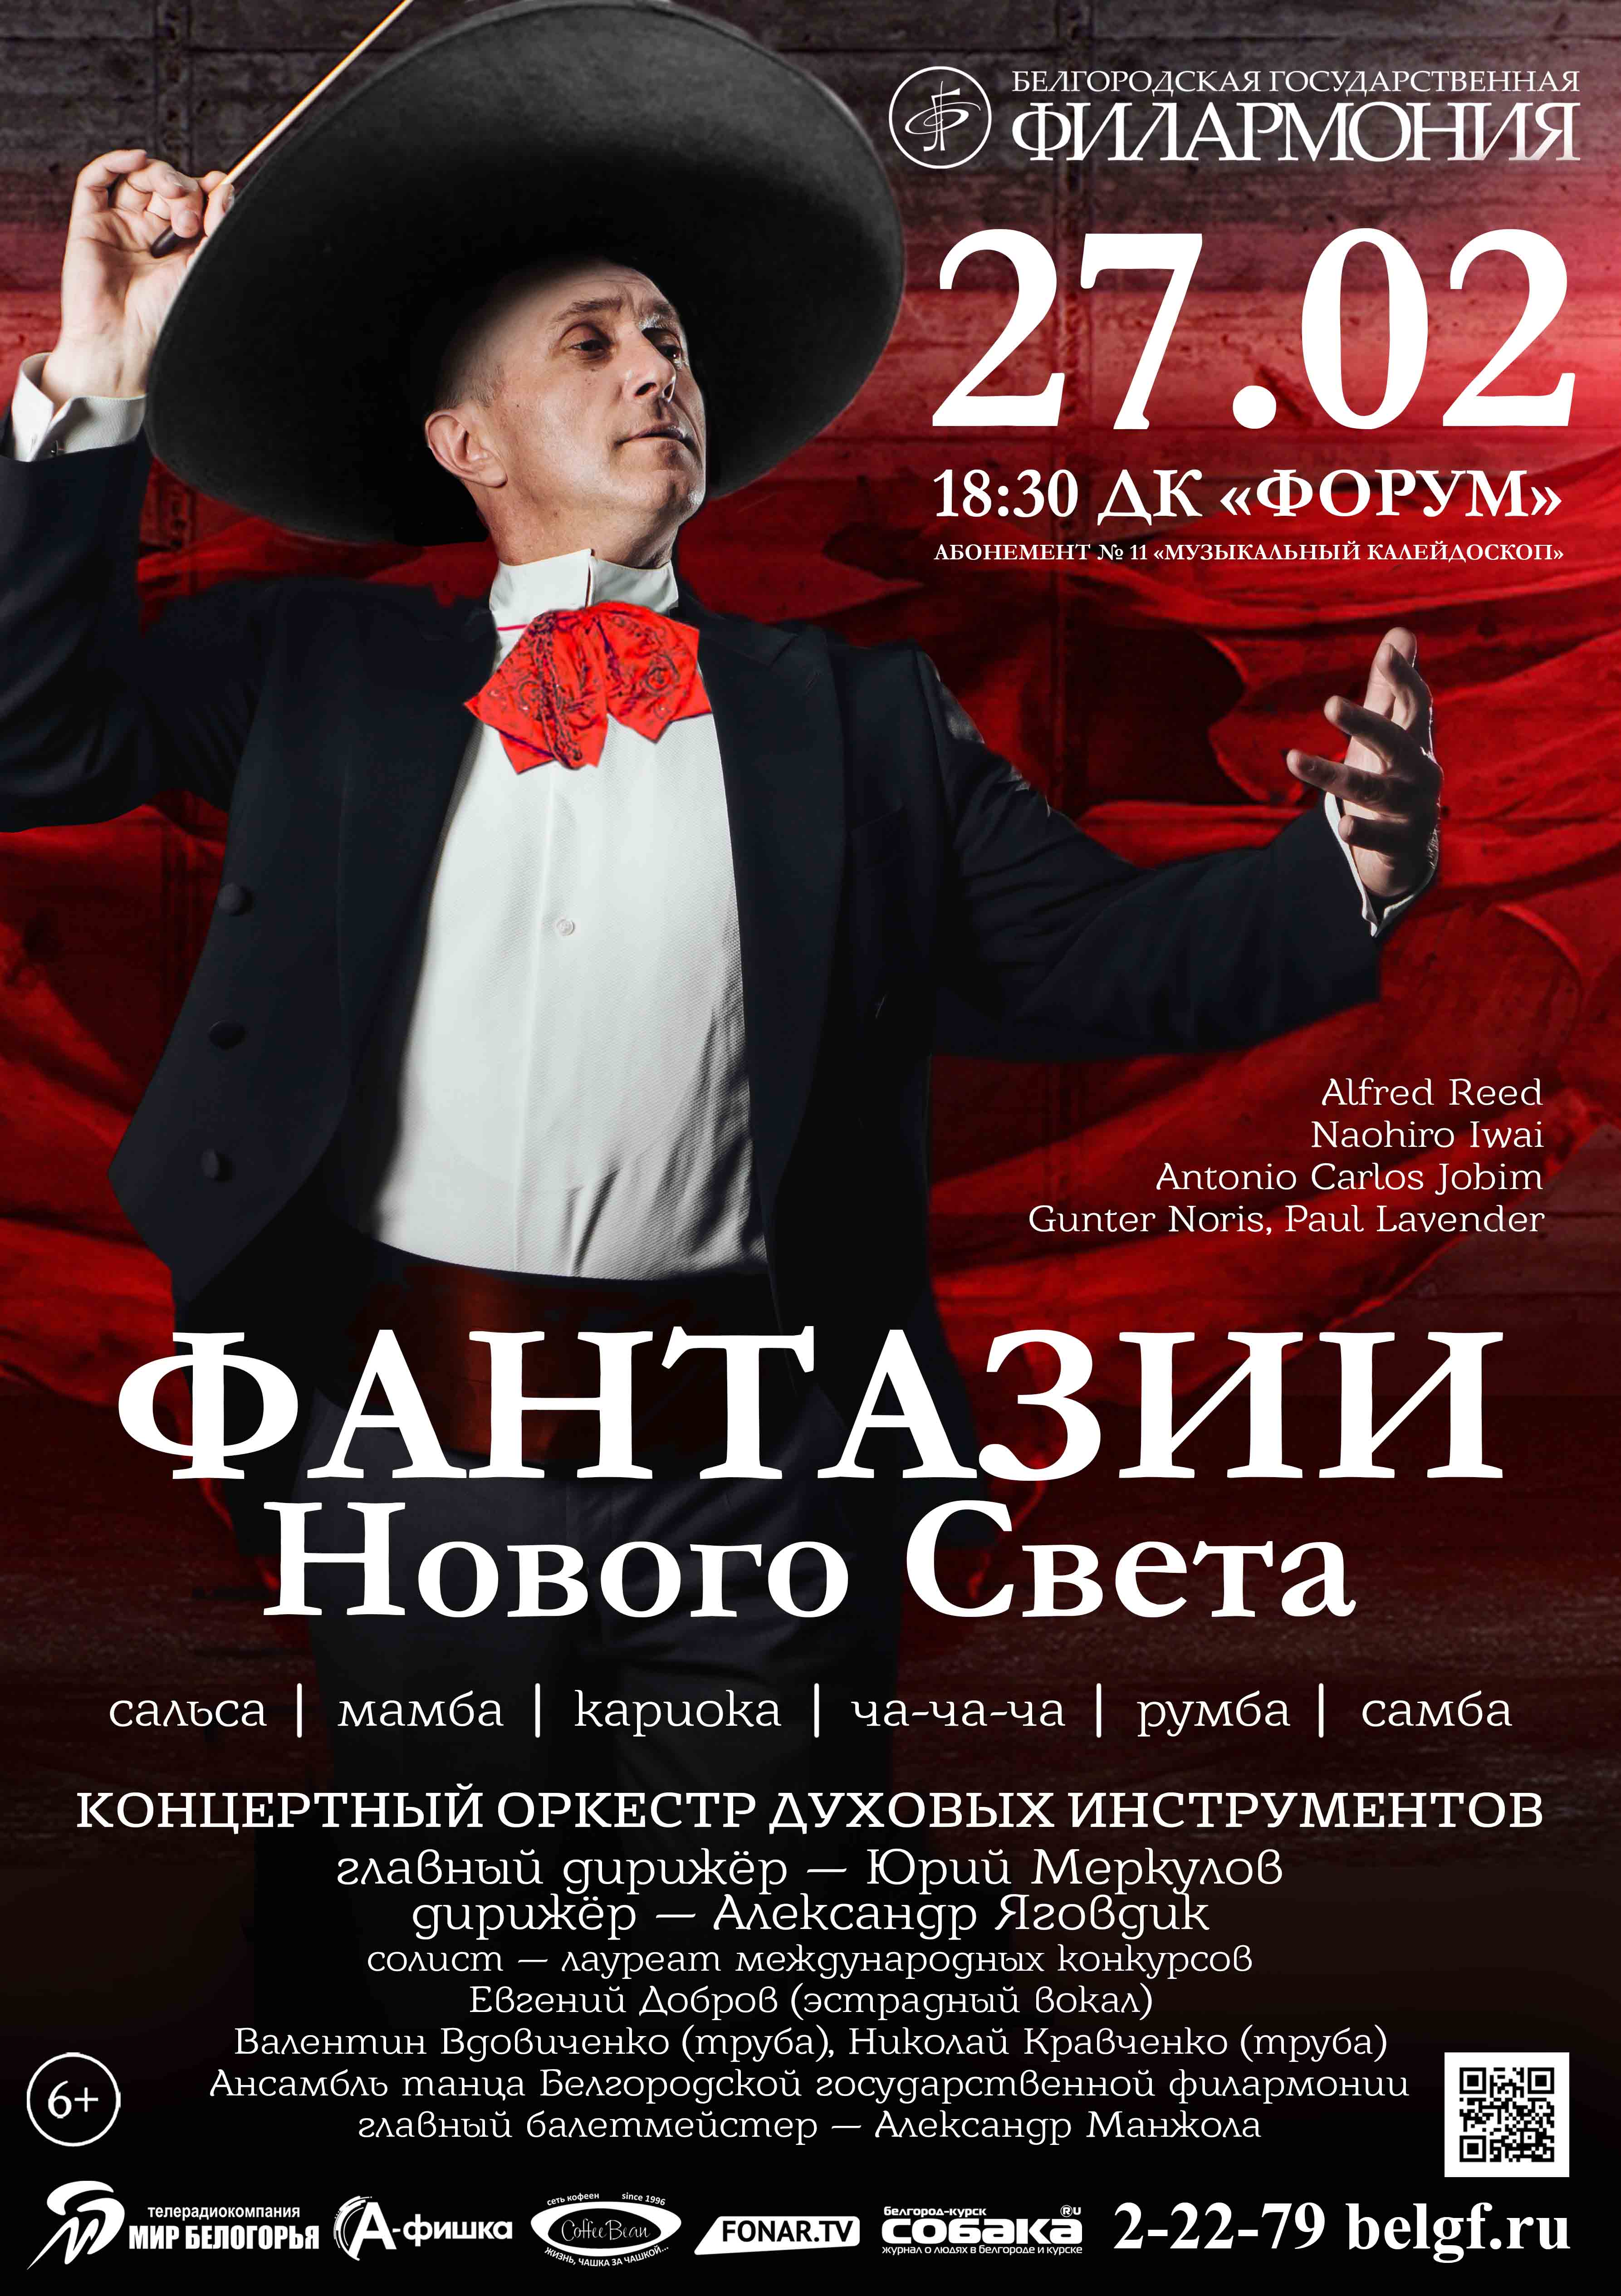 Концертный оркестр духовых инструментов Белгородской государственной филармонии «Фантазии нового света»